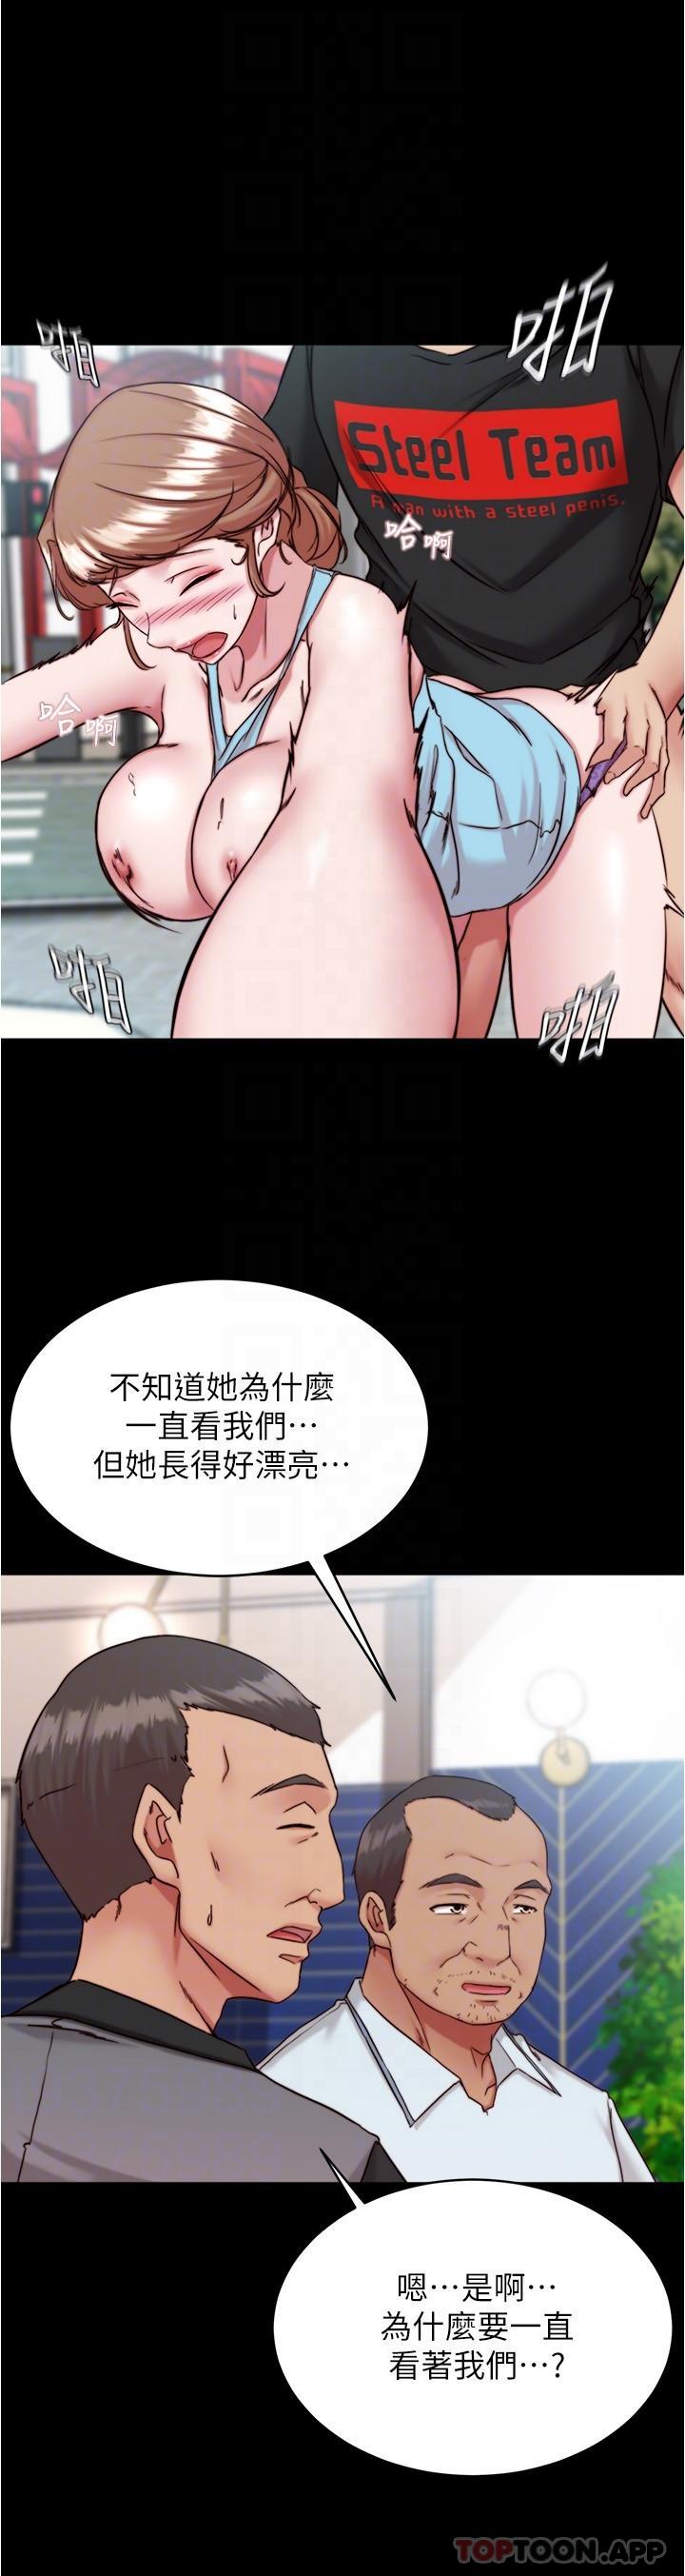 韩国污漫画 小褲褲筆記 第129话-在户外兴奋的阿姨 25